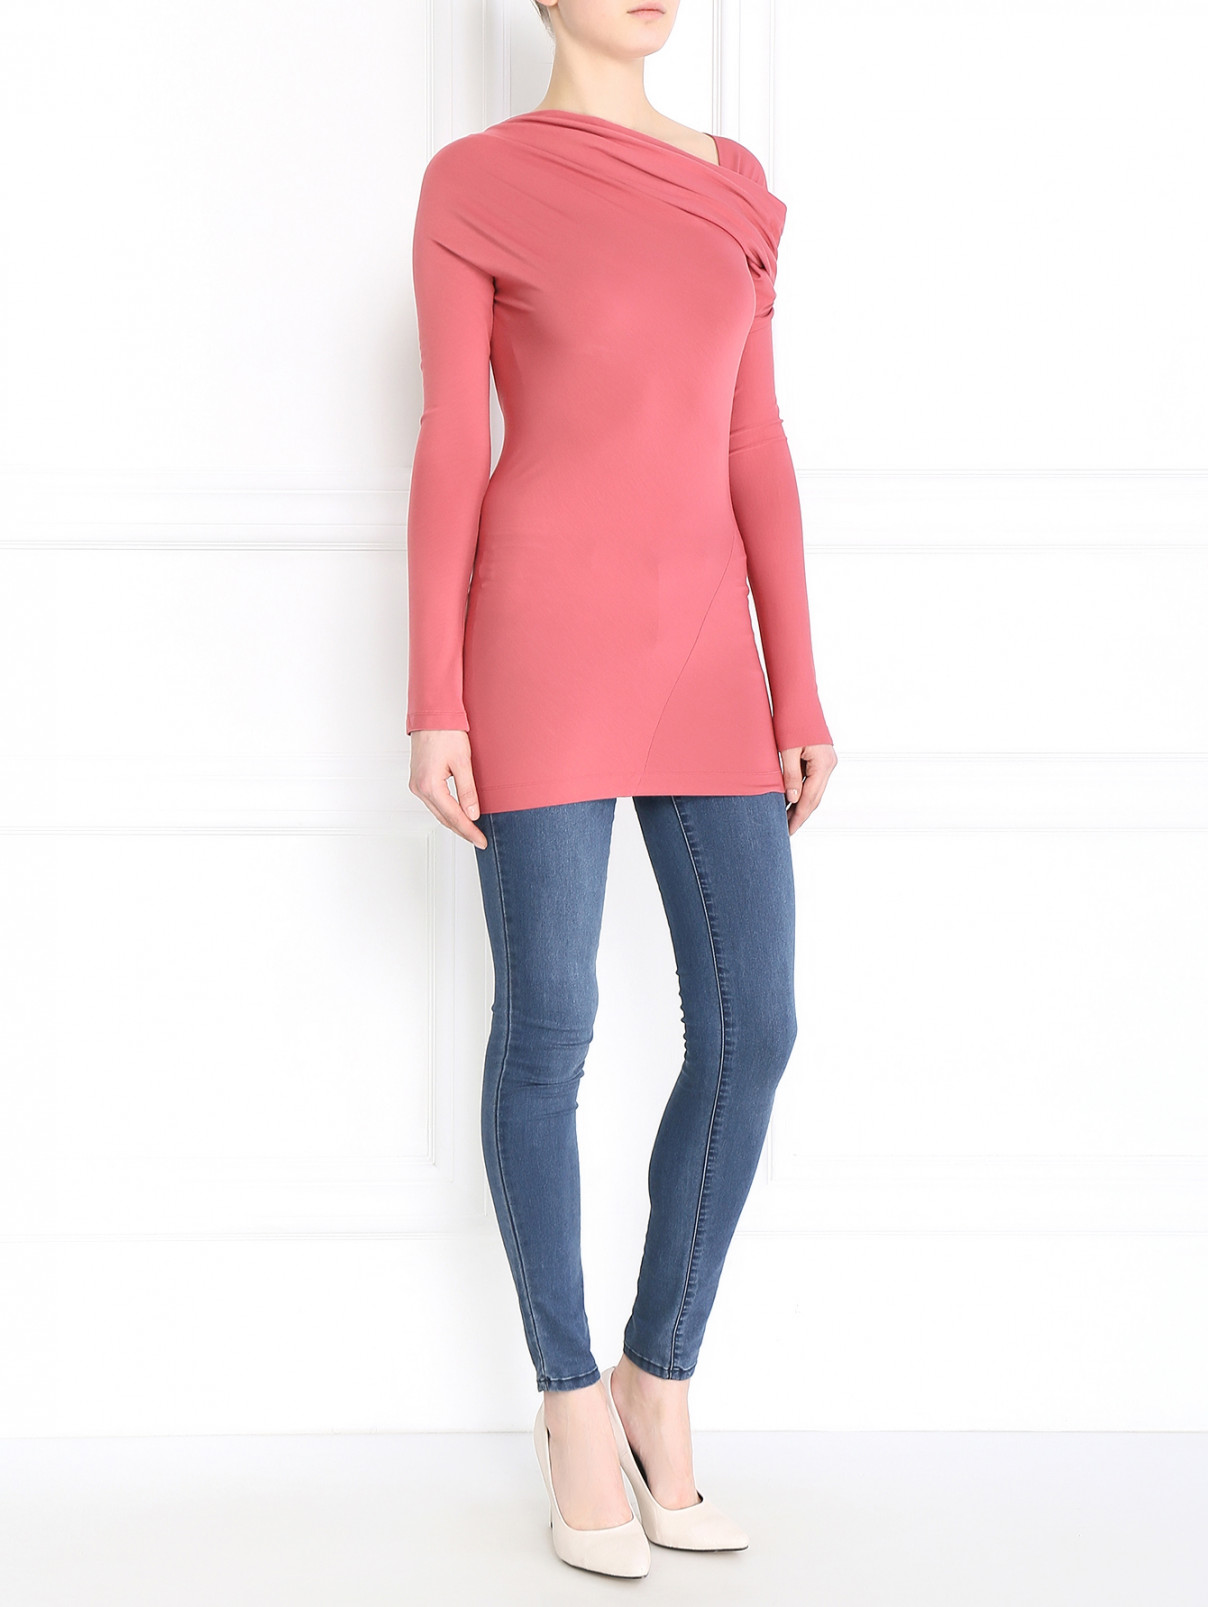 Джемпер с драпировкой Donna Karan  –  Модель Общий вид  – Цвет:  Розовый